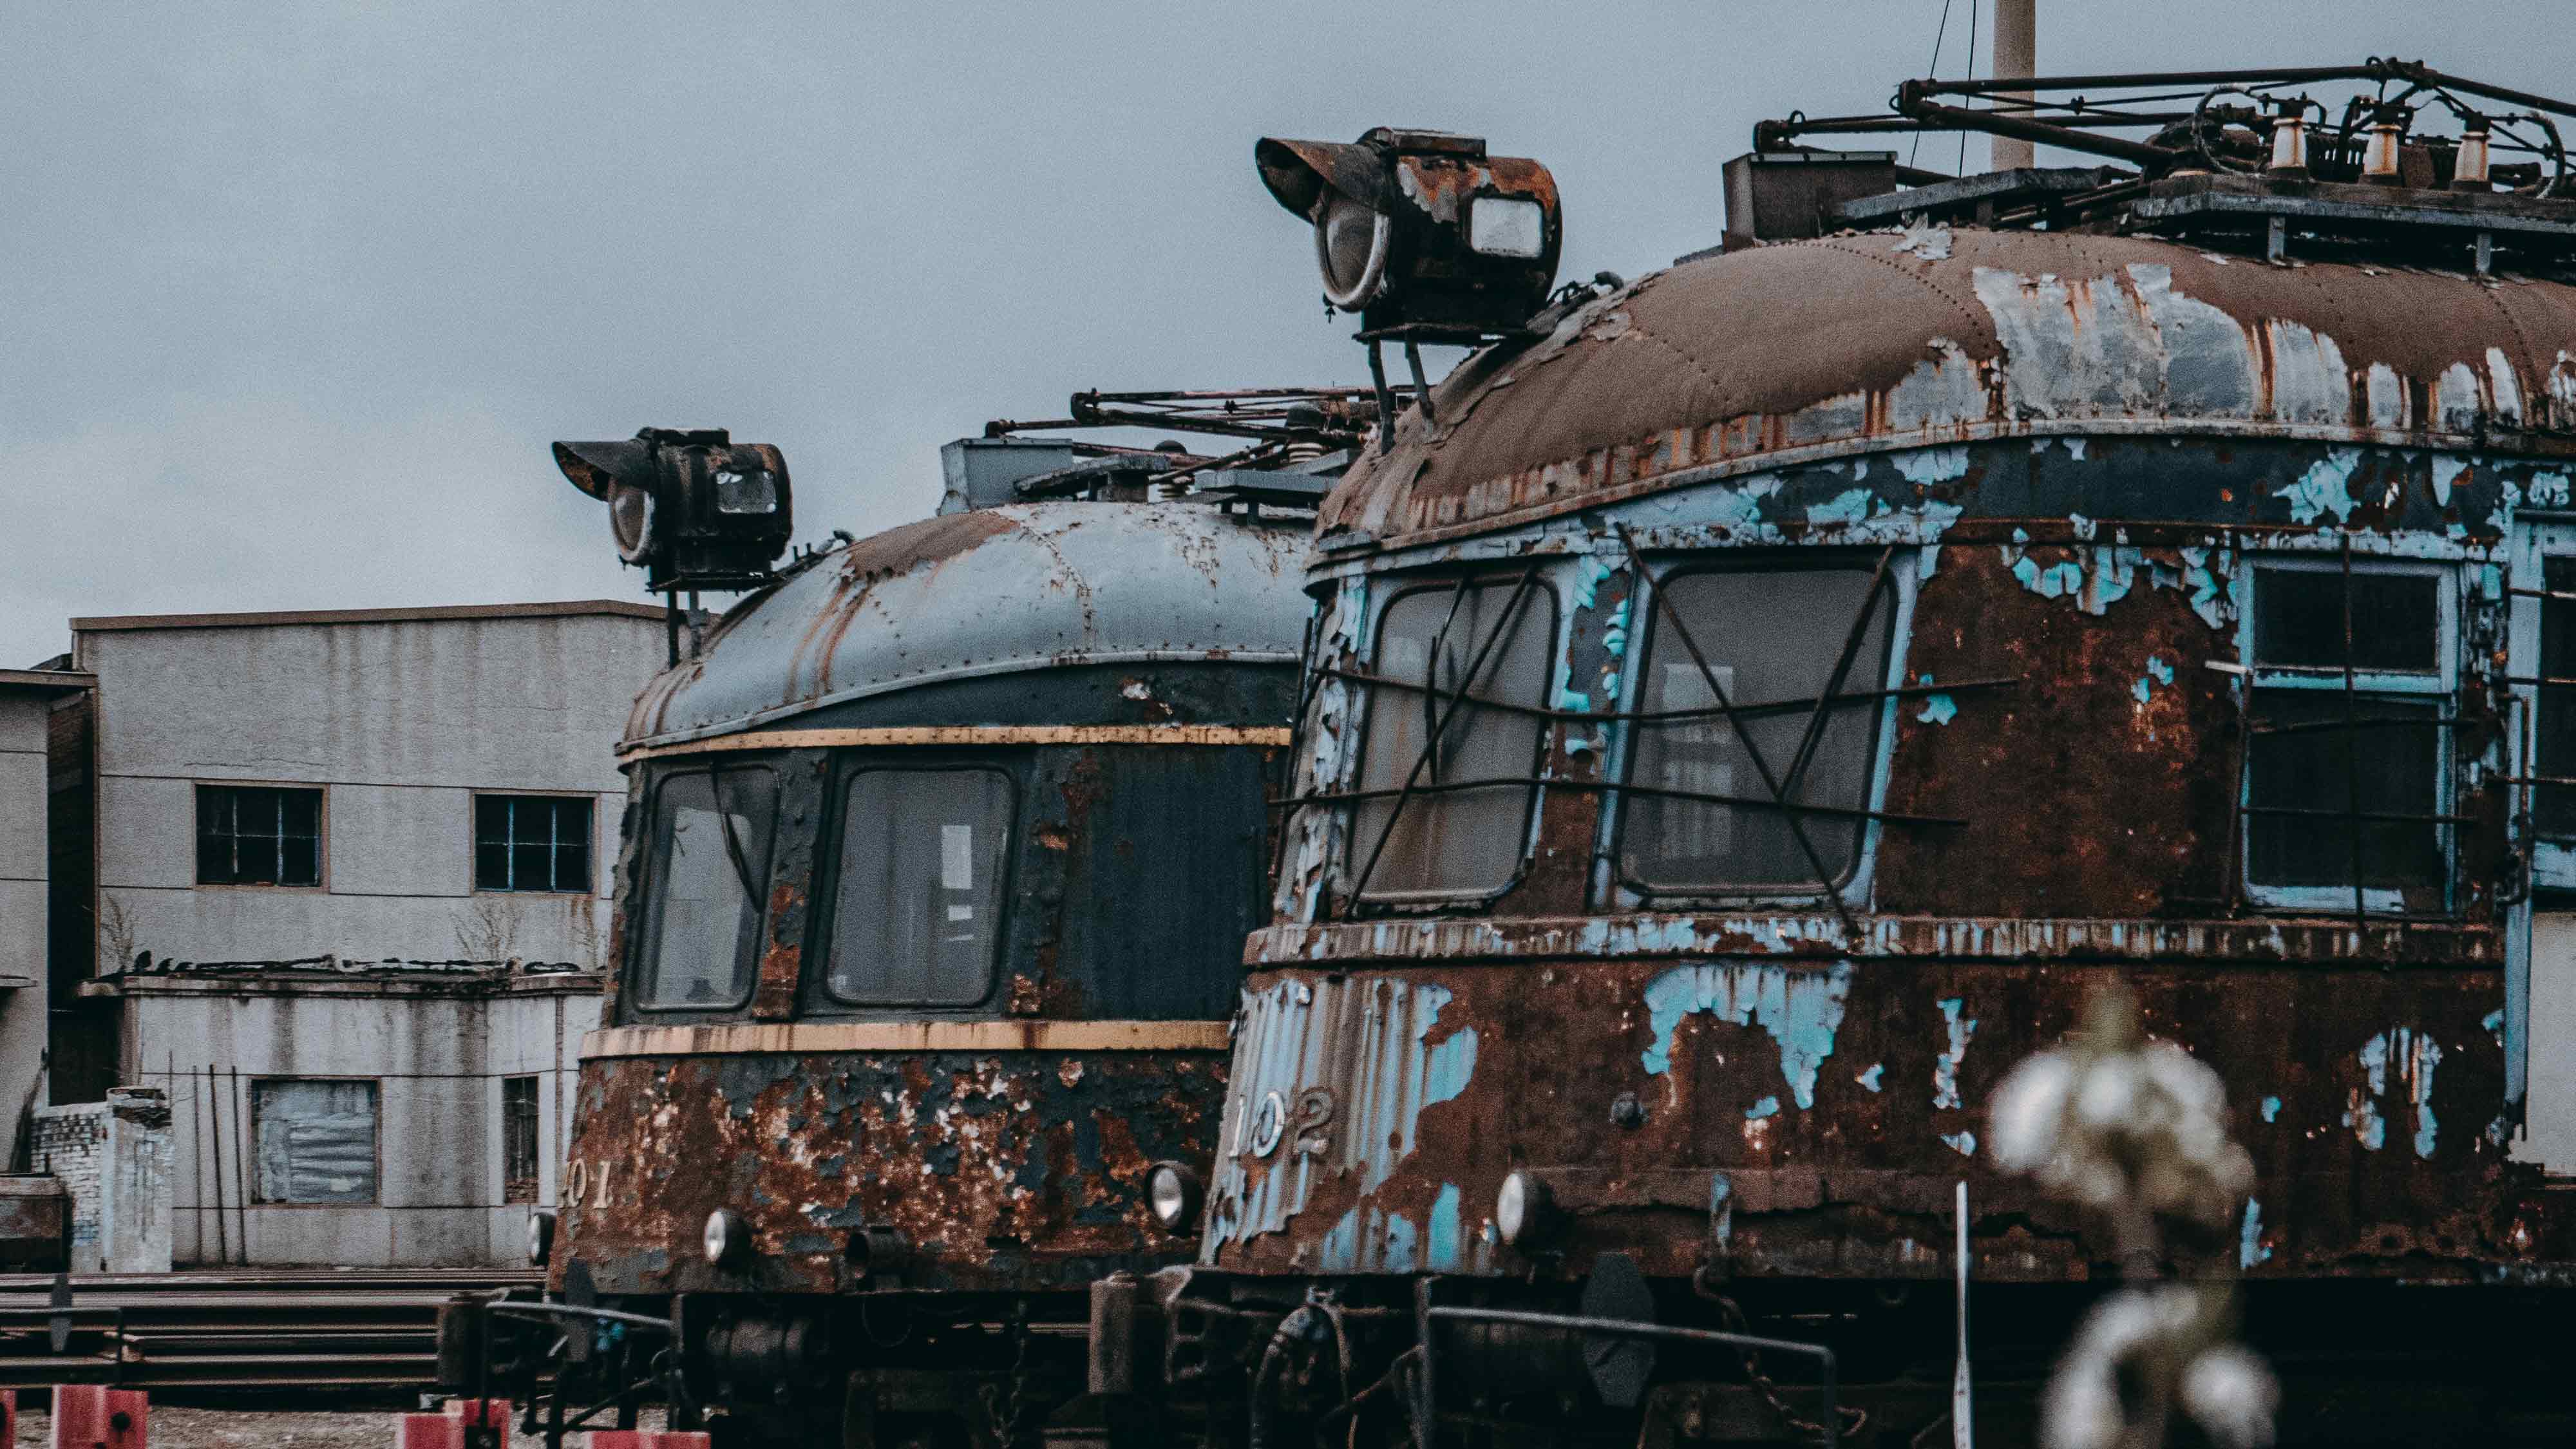 Image of abandoned trains